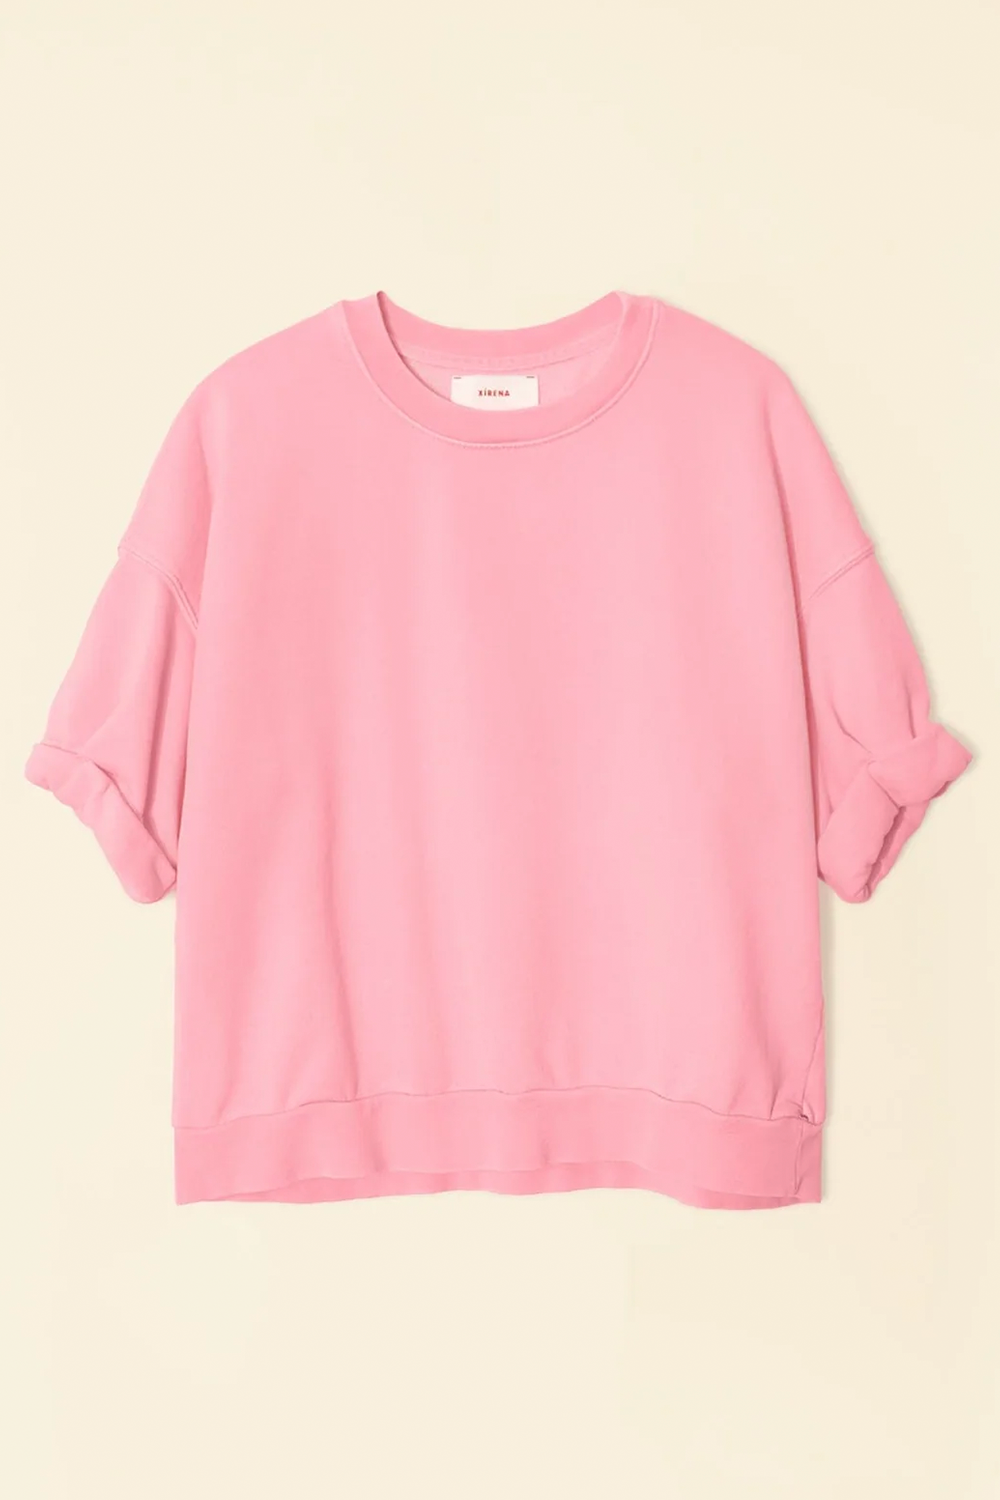 Trixie Sweatshirt Pink Torch